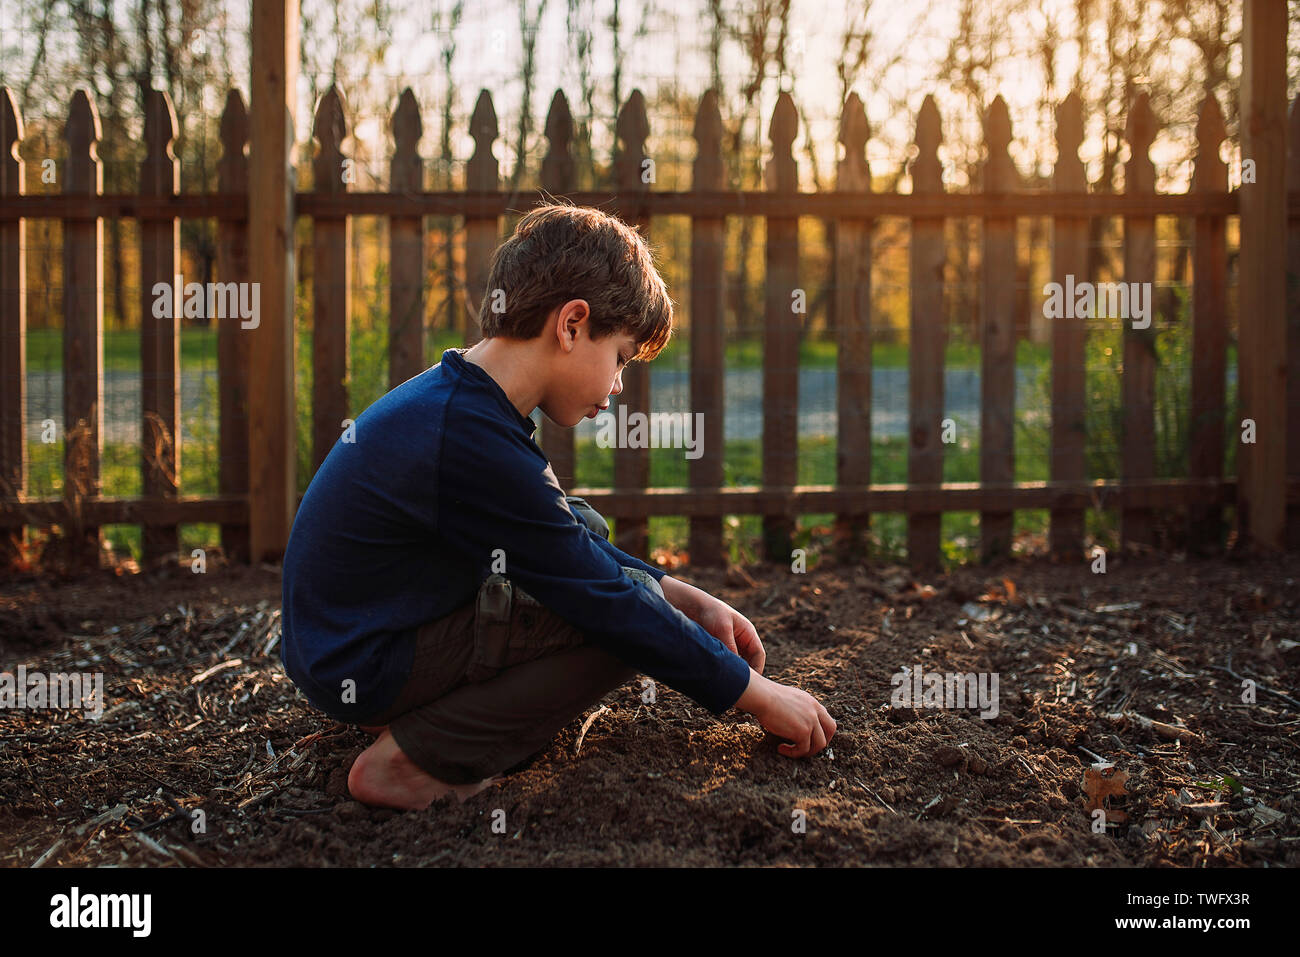 Garçon de planter des graines dans un jardin, United States Banque D'Images